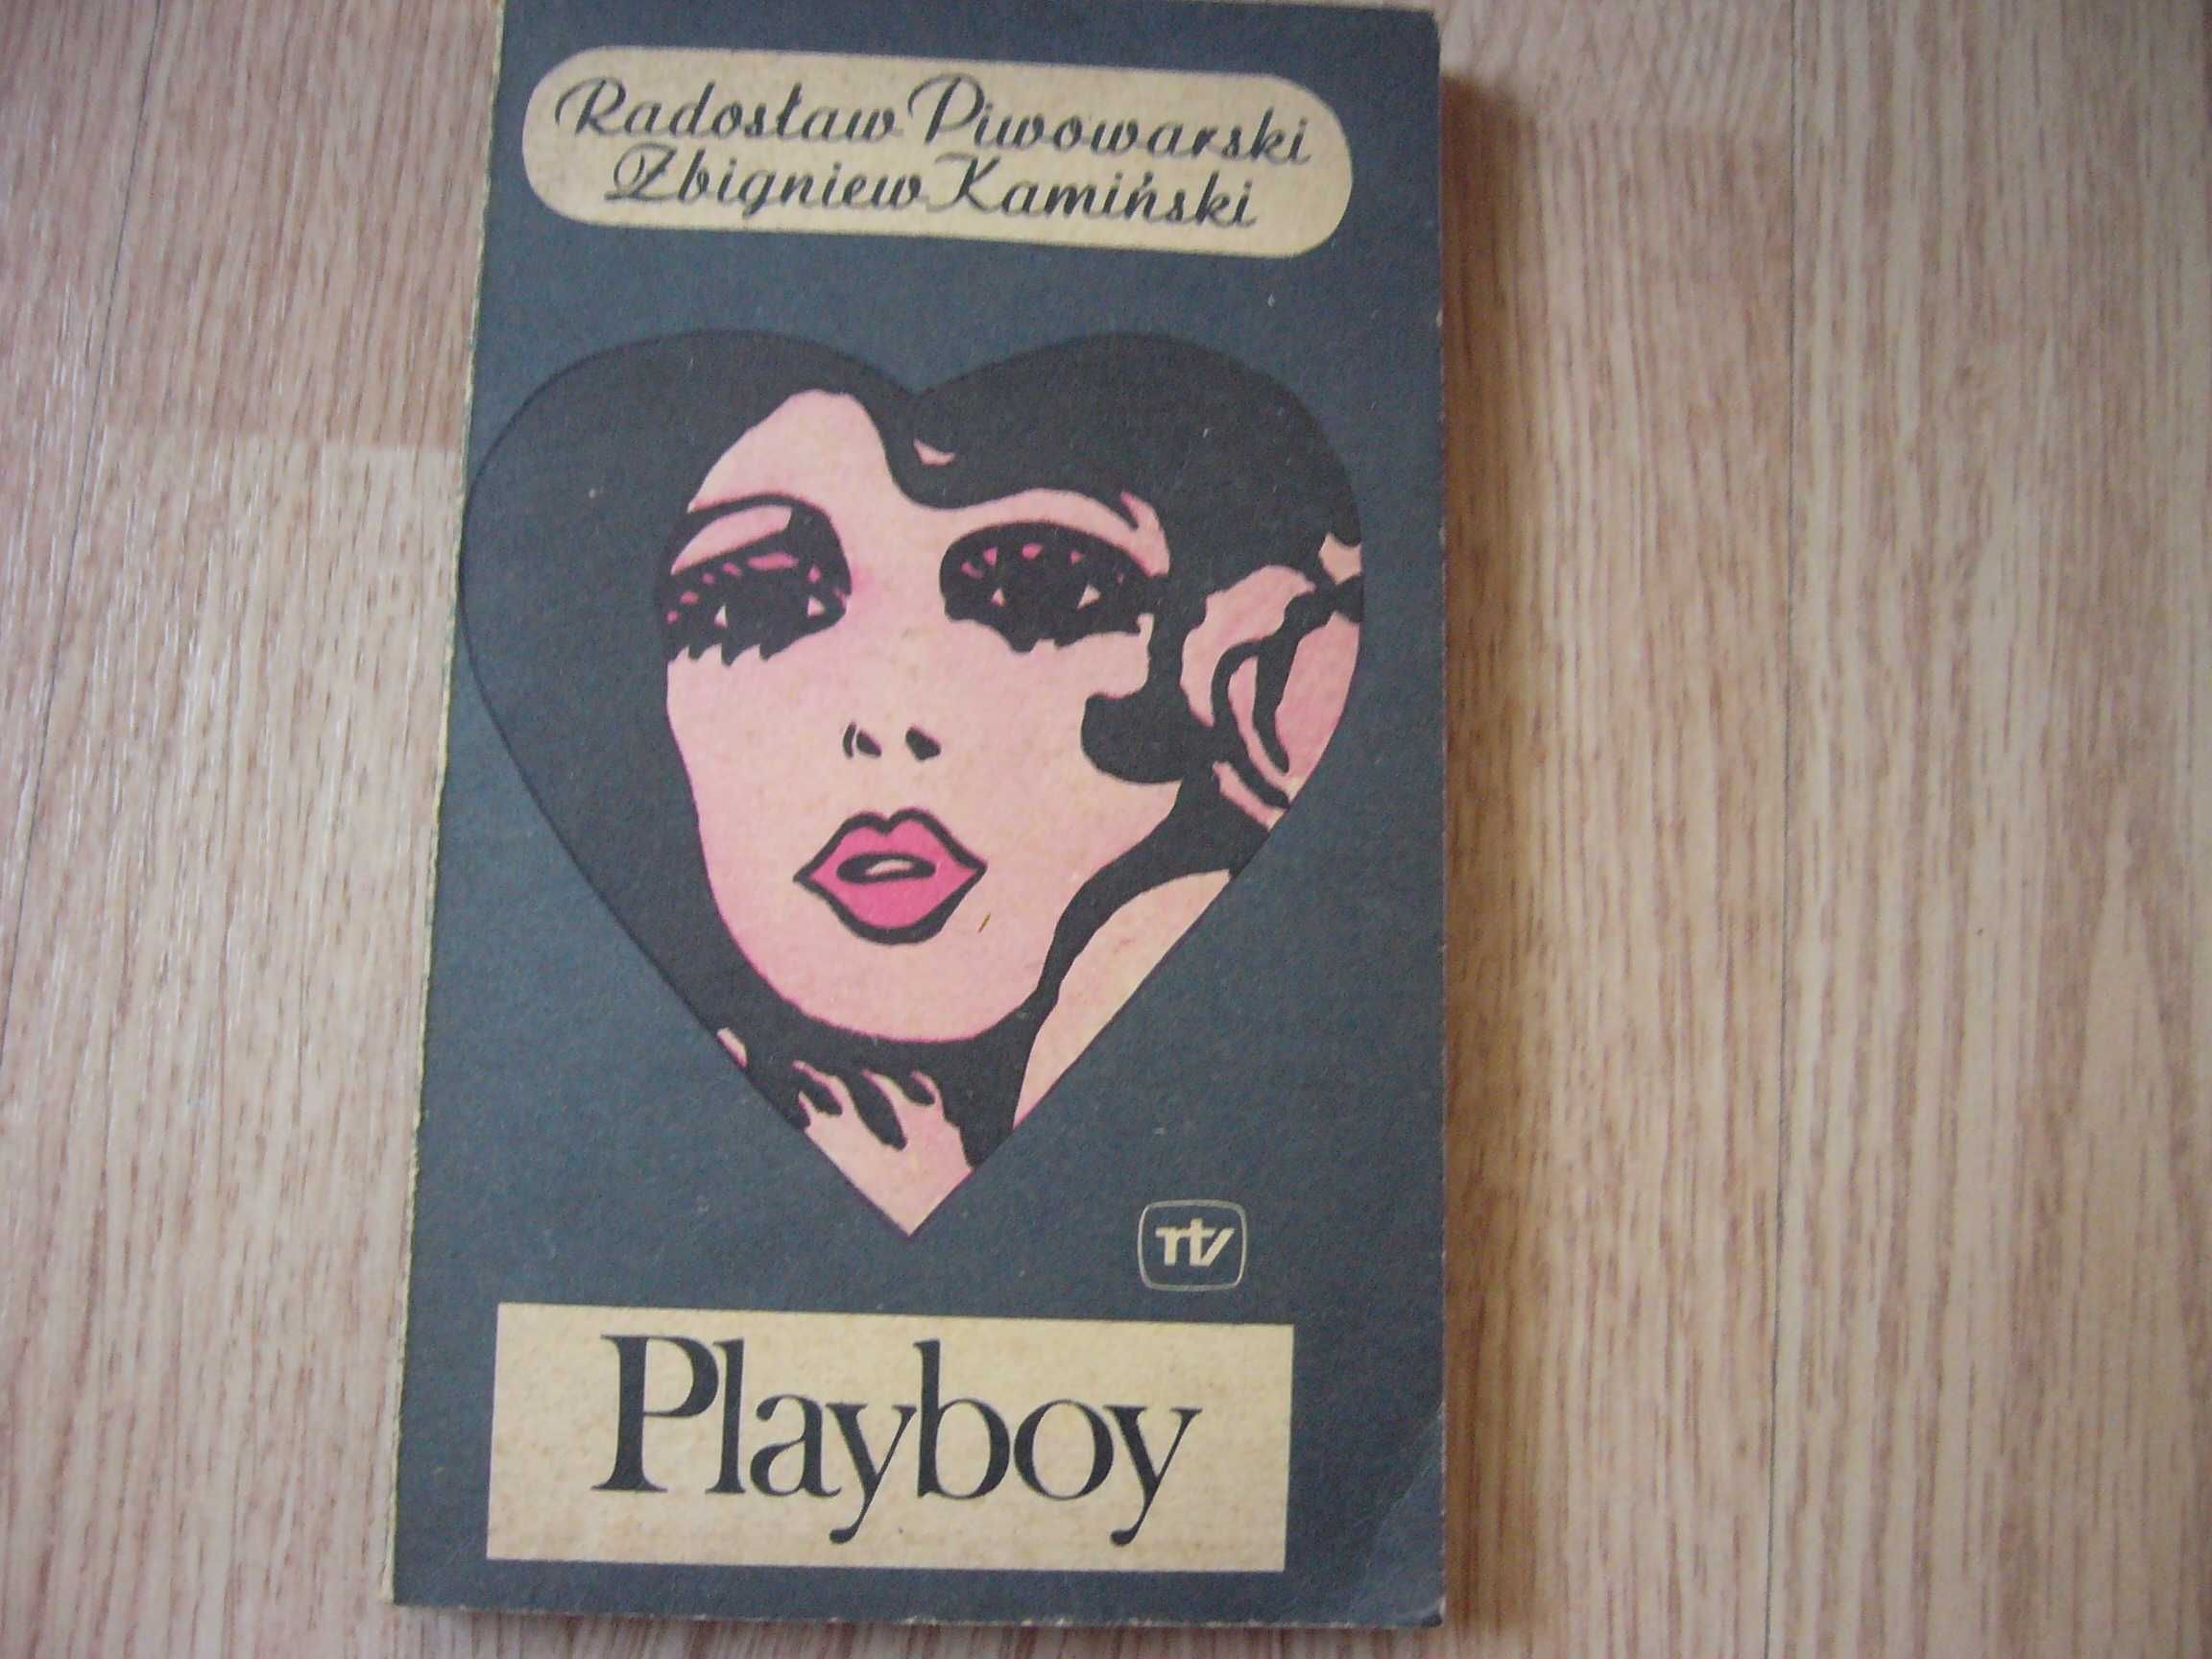 Playboy - Radosław Piwowarski, Zbigniew Kamiński